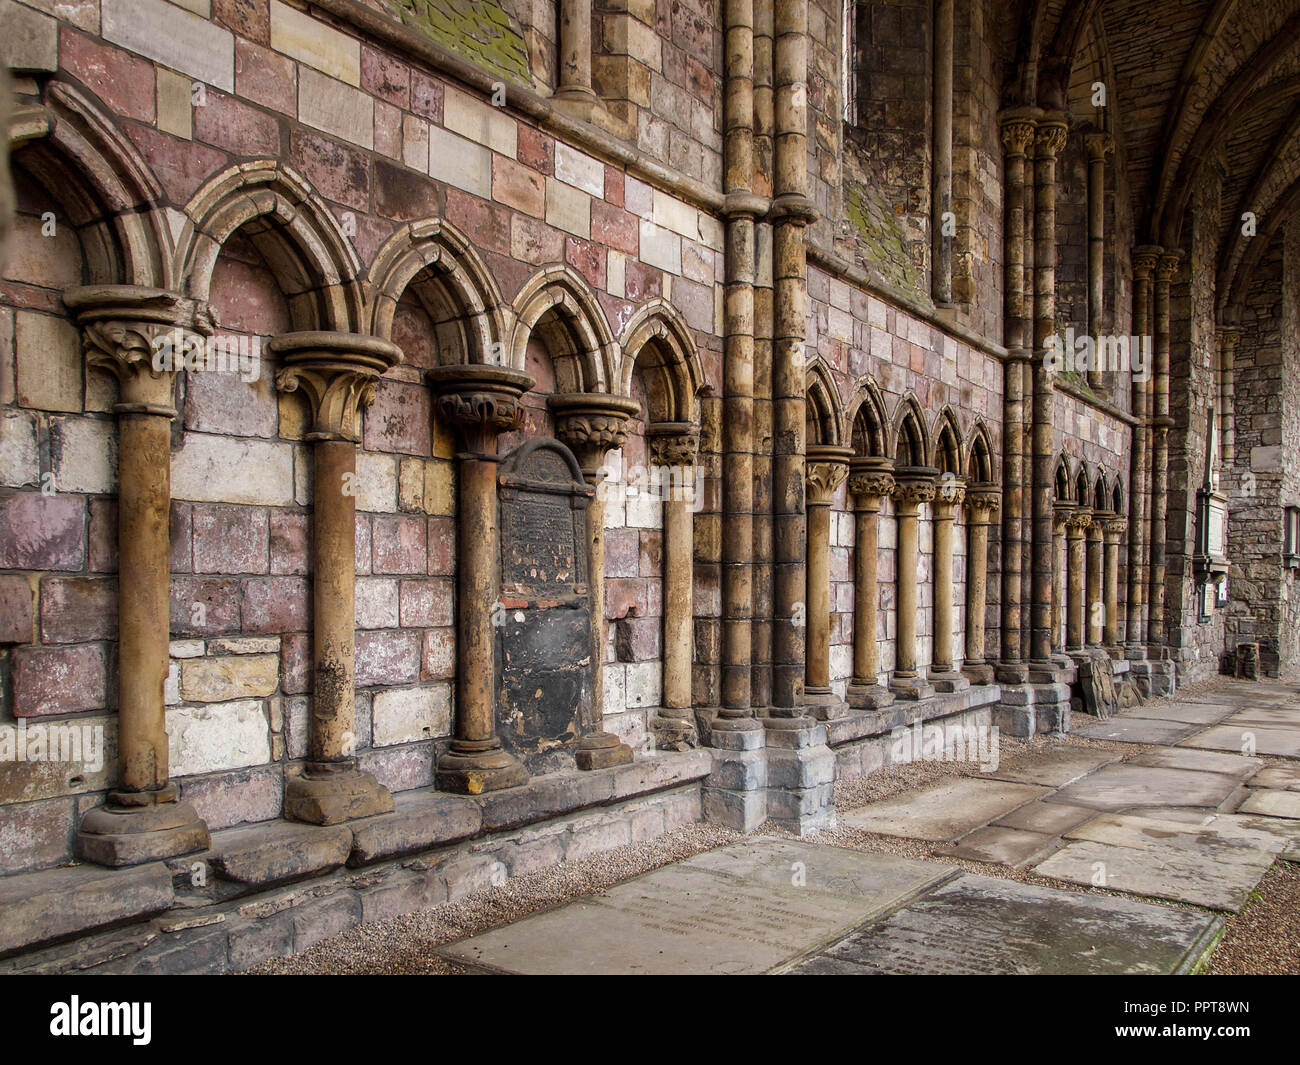 Dettagli architettonici del corridoio nord, Hollyrood abbazia costruita da Re David ho in 1128 per cannoni regolari di Edimburgo in Scozia Foto Stock